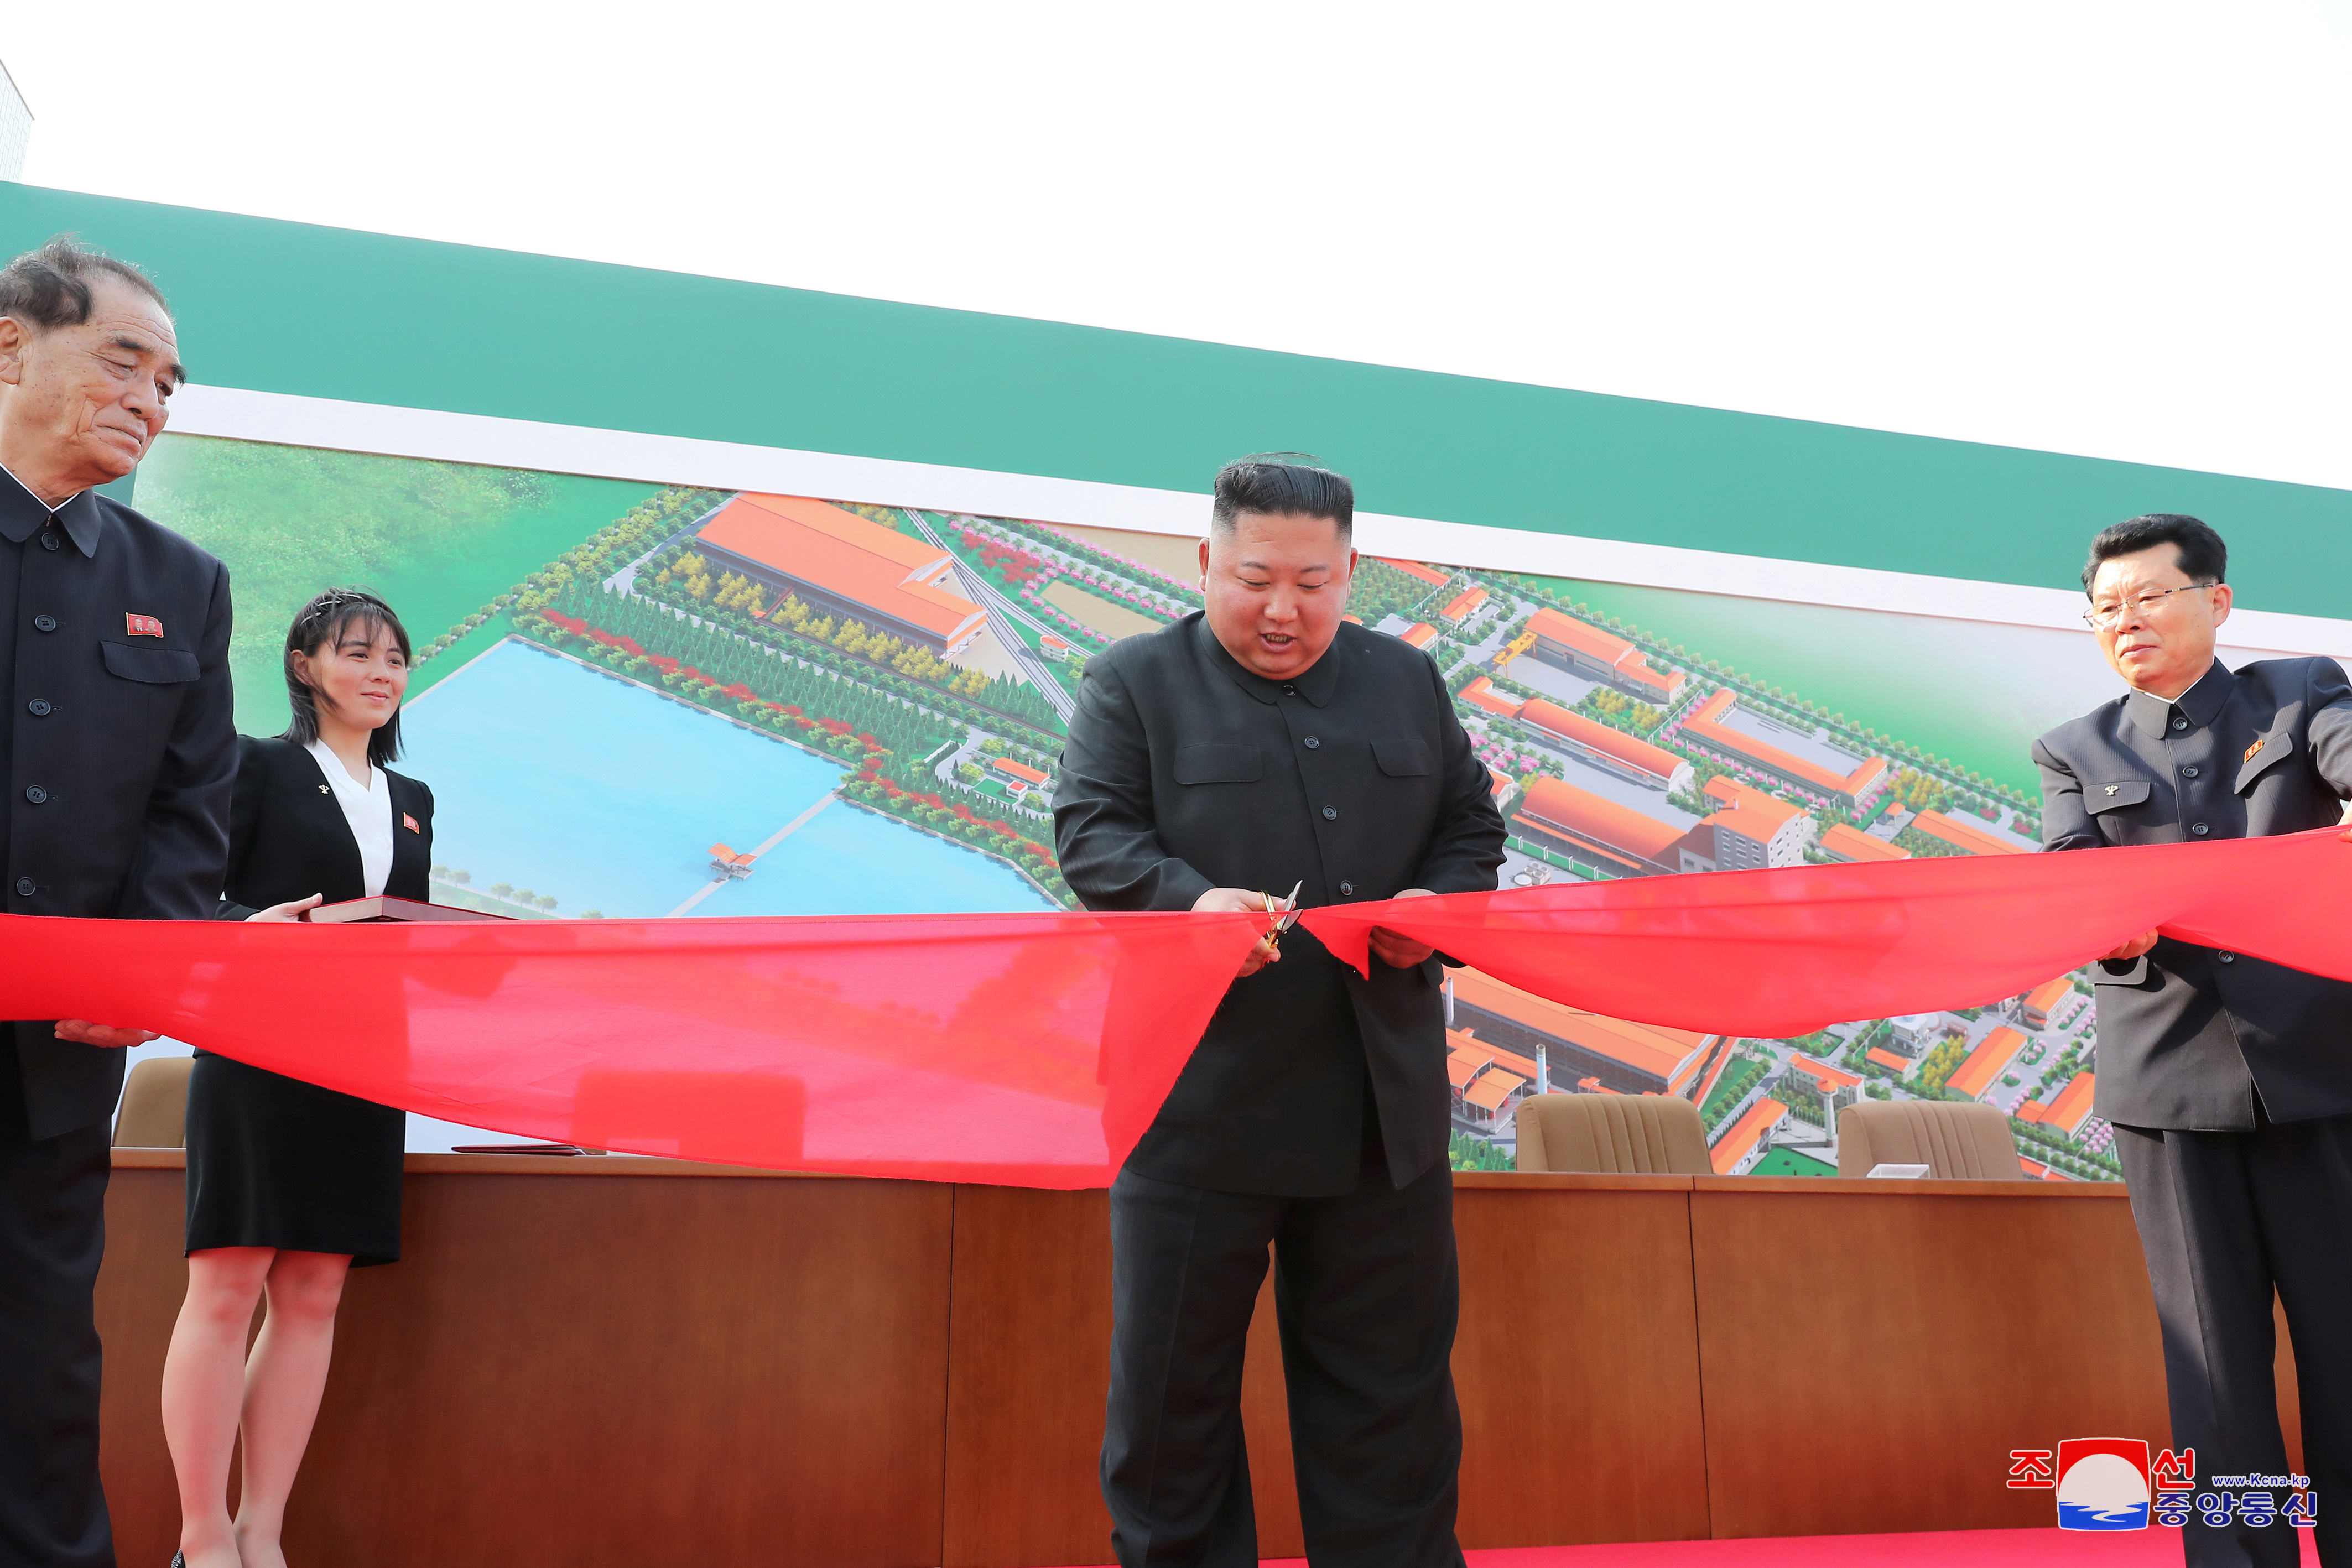 朝鲜官媒后来公布活动照片，显示金正恩笑容灿烂现身典礼剪彩。-朝中社-